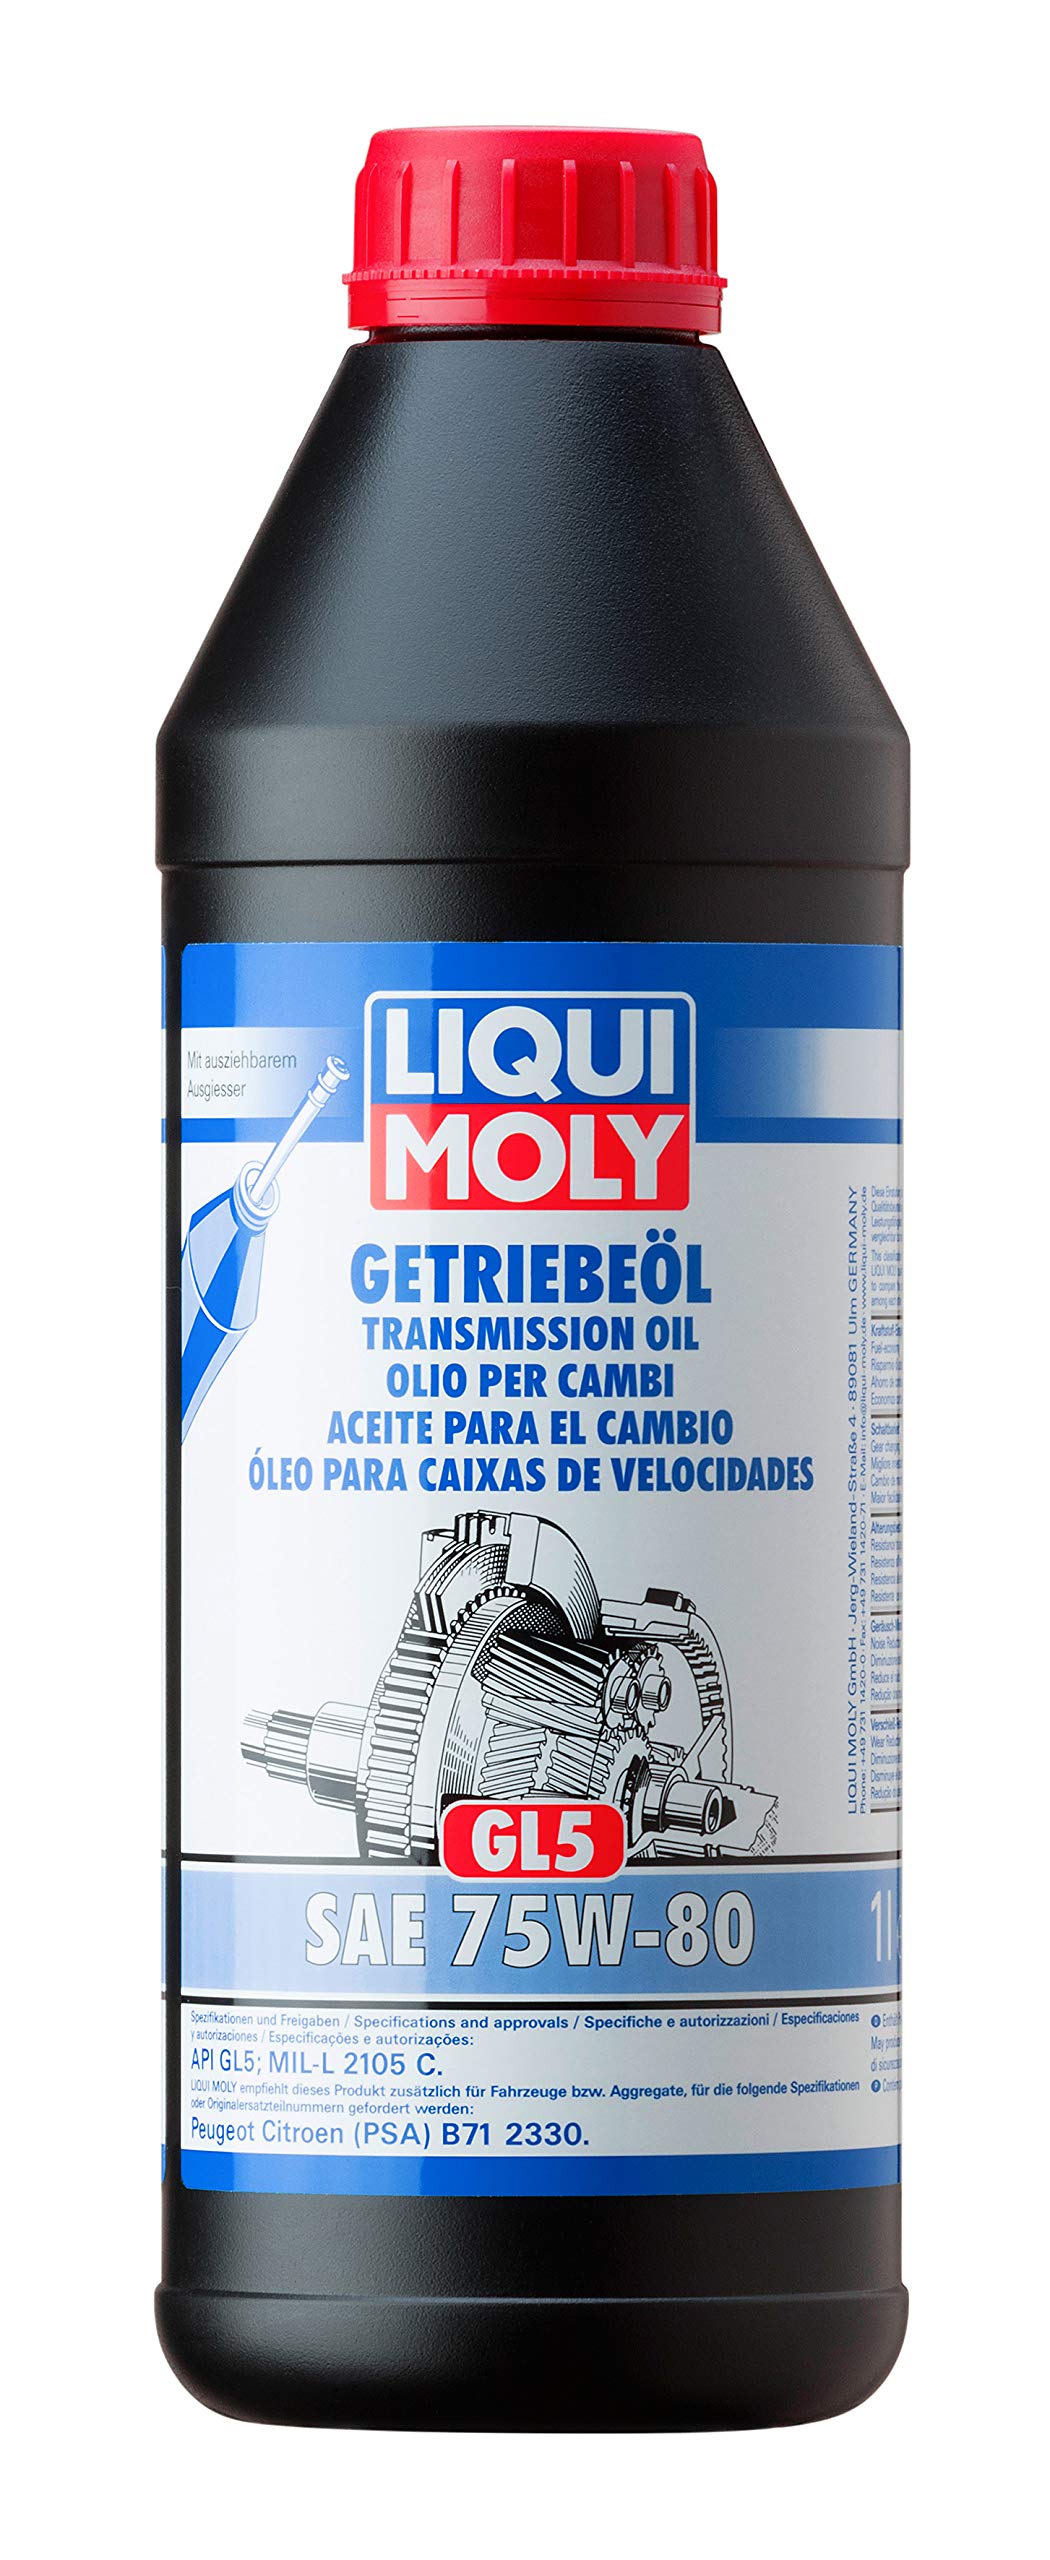 LIQUI MOLY Getriebeöl (GL5) 75W-80 | 1 L | Getriebeöl | Hydrauliköl | Art.-Nr.: 3658 von Liqui Moly